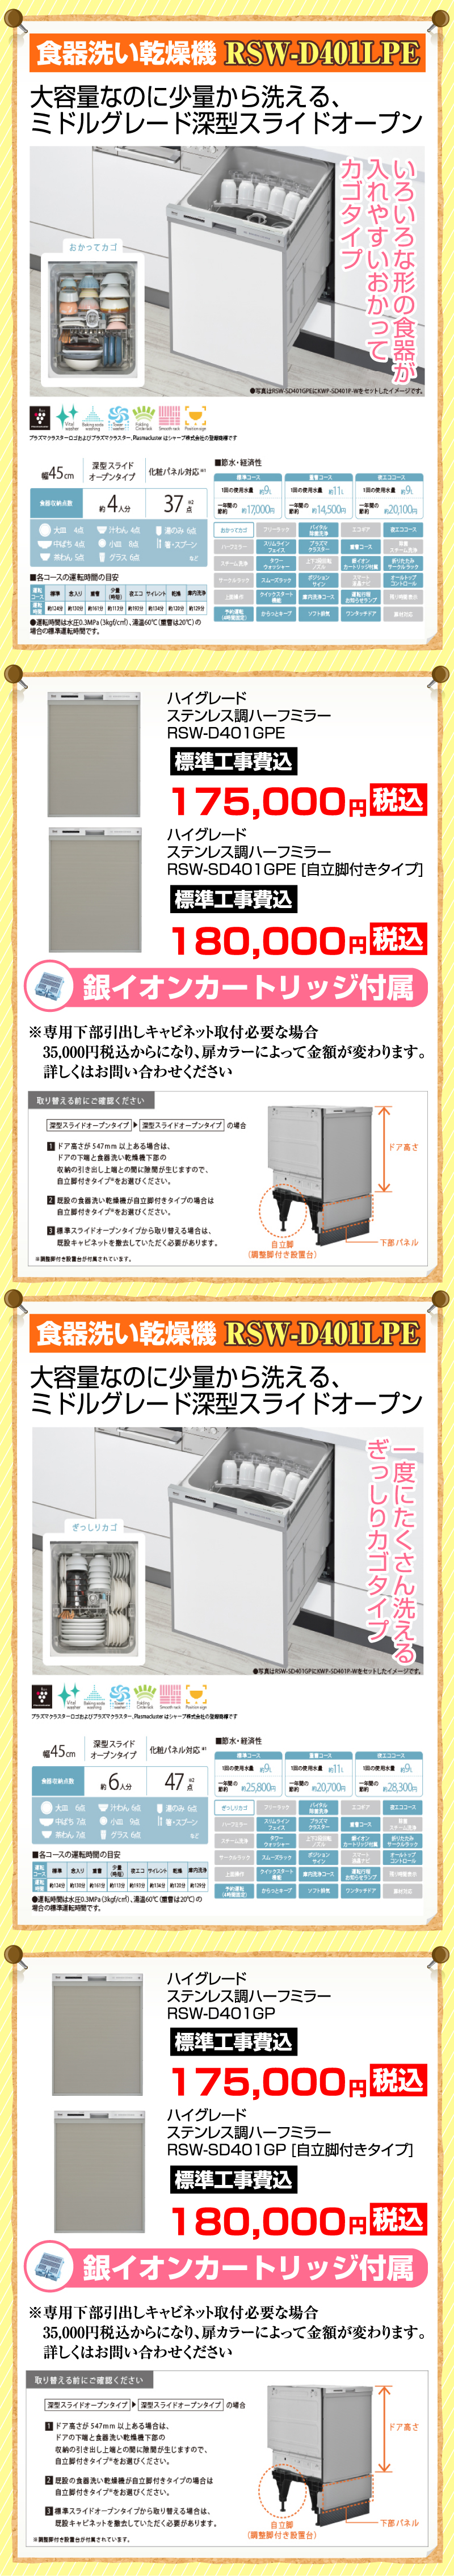 リンナイ食器洗い機 深型 スライドオープンタイプ RSW-401C(A)